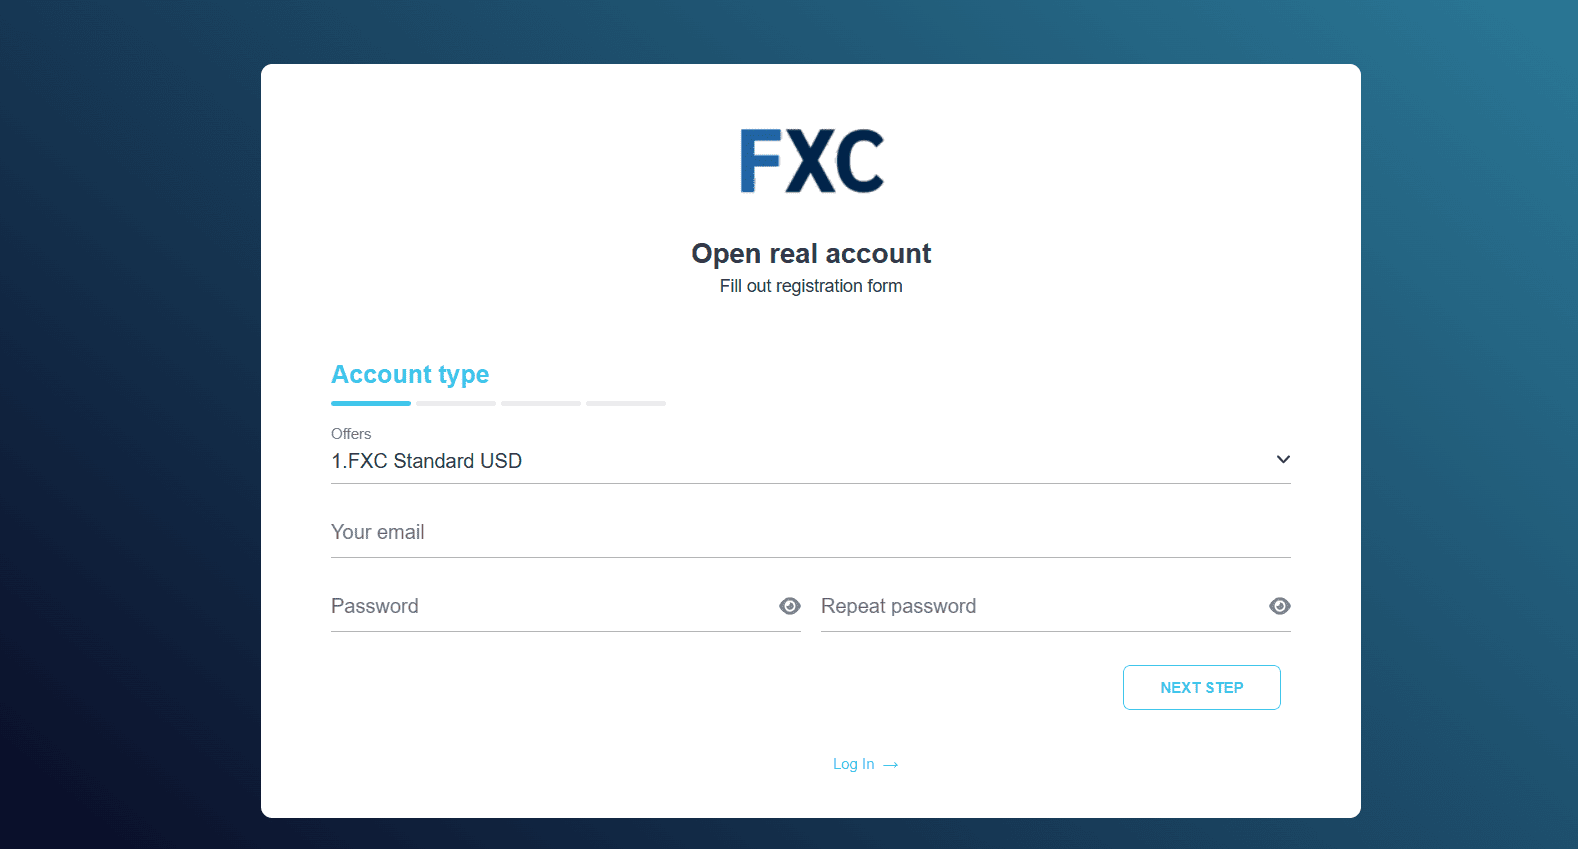 FXCentrumKullanıcı Hesabının İncelenmesi - Kayıt formunun doldurulması